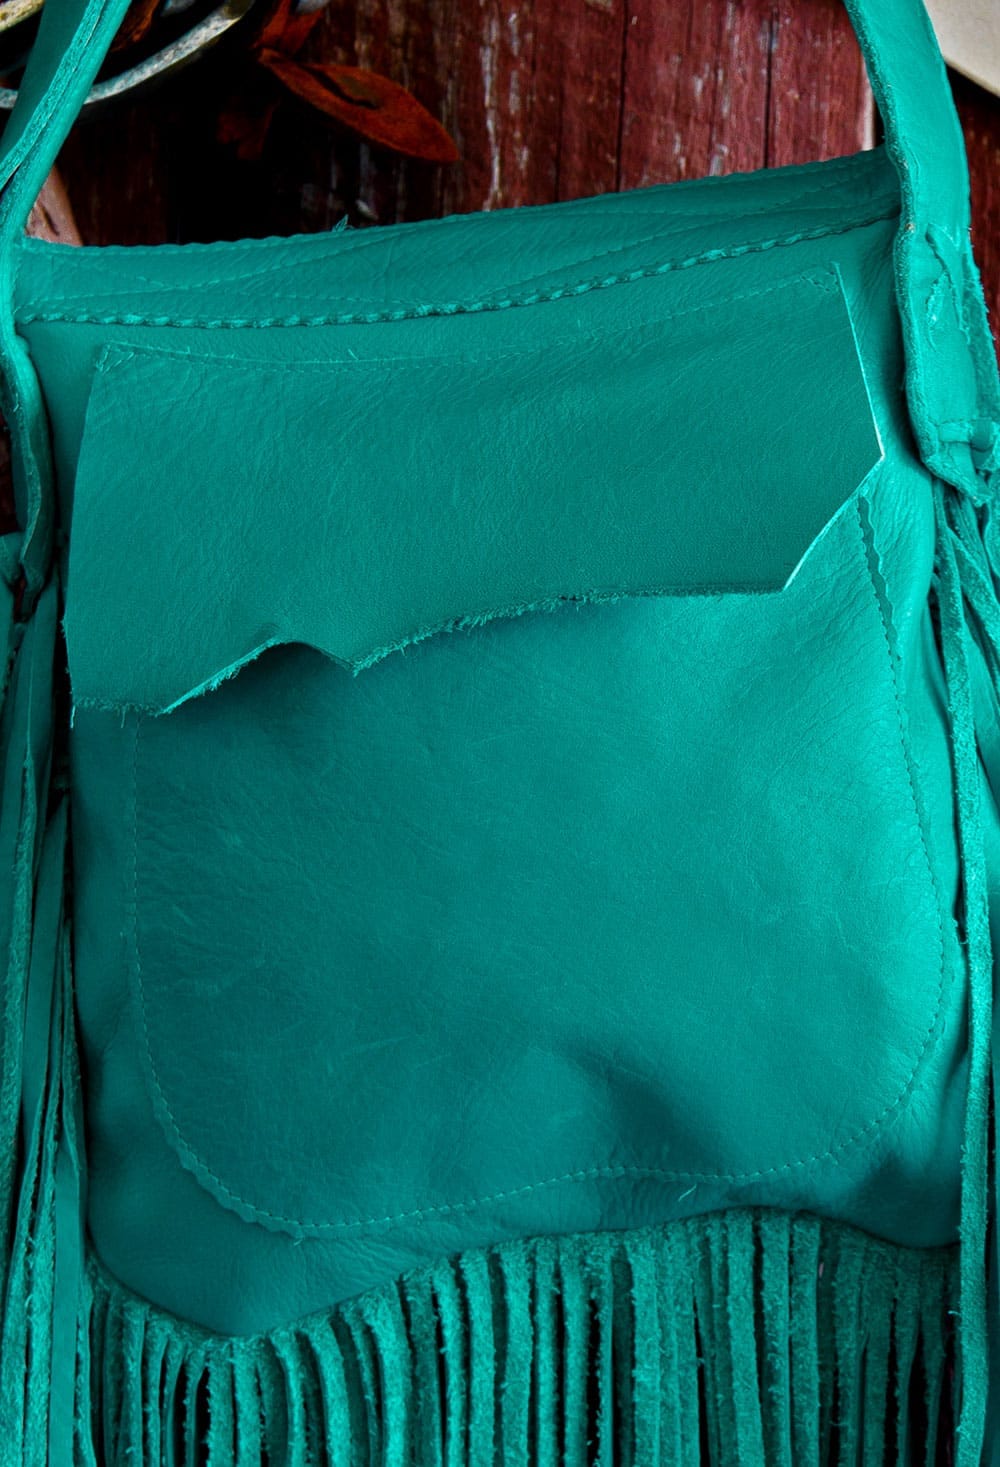 Luxury Western Purse Fringe / Bag / PU Leather / Turquoise -  UK